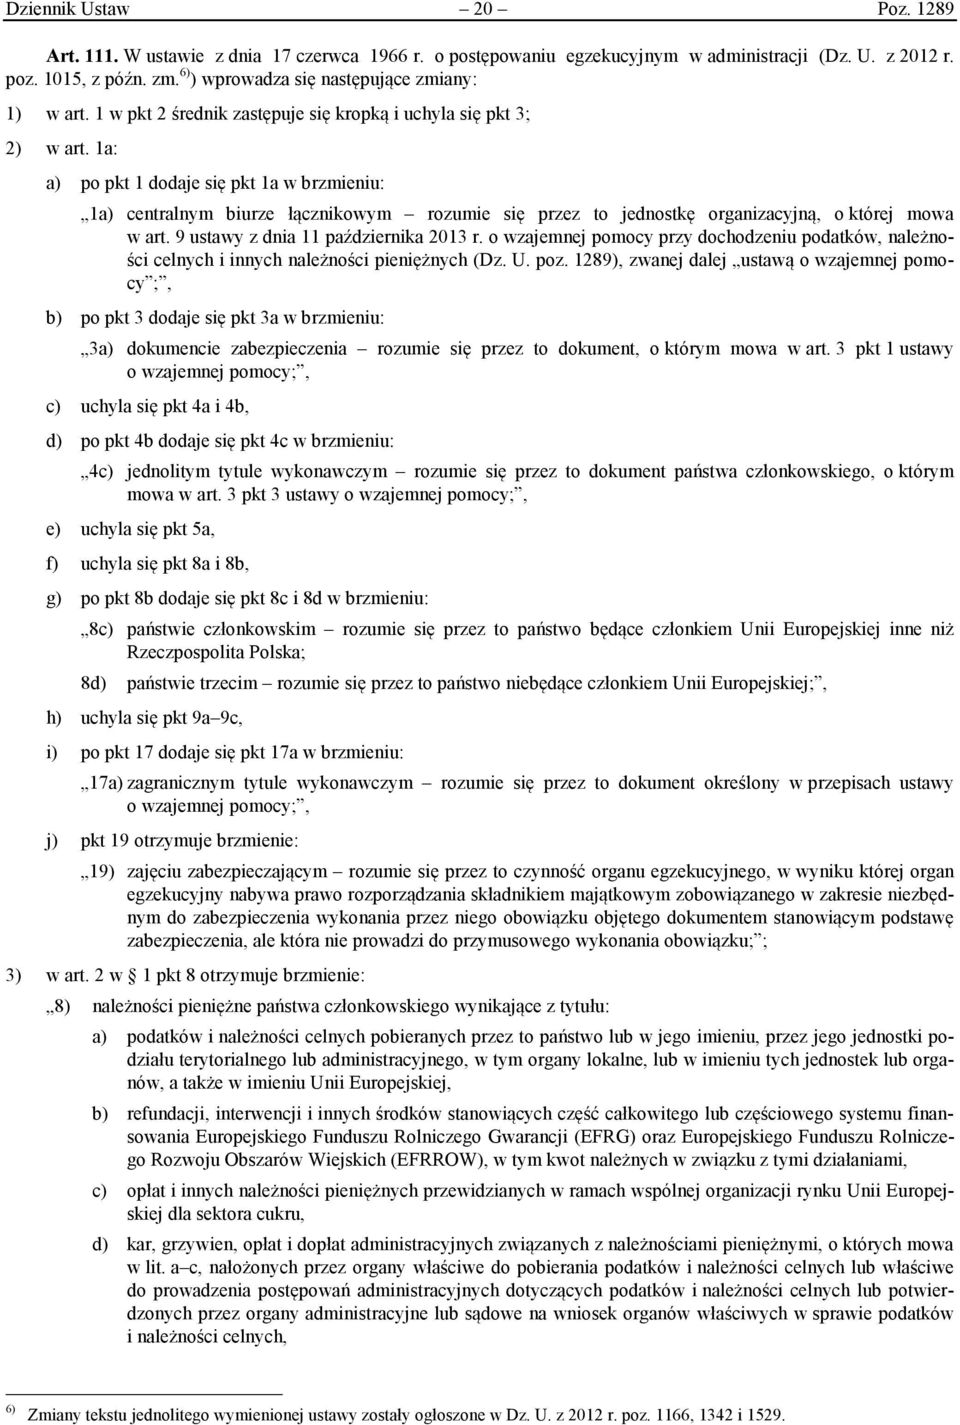 1a: a) po pkt 1 dodaje się pkt 1a w brzmieniu: 1a) centralnym biurze łącznikowym rozumie się przez to jednostkę organizacyjną, o której mowa w art. 9 ustawy z dnia 11 października 2013 r.